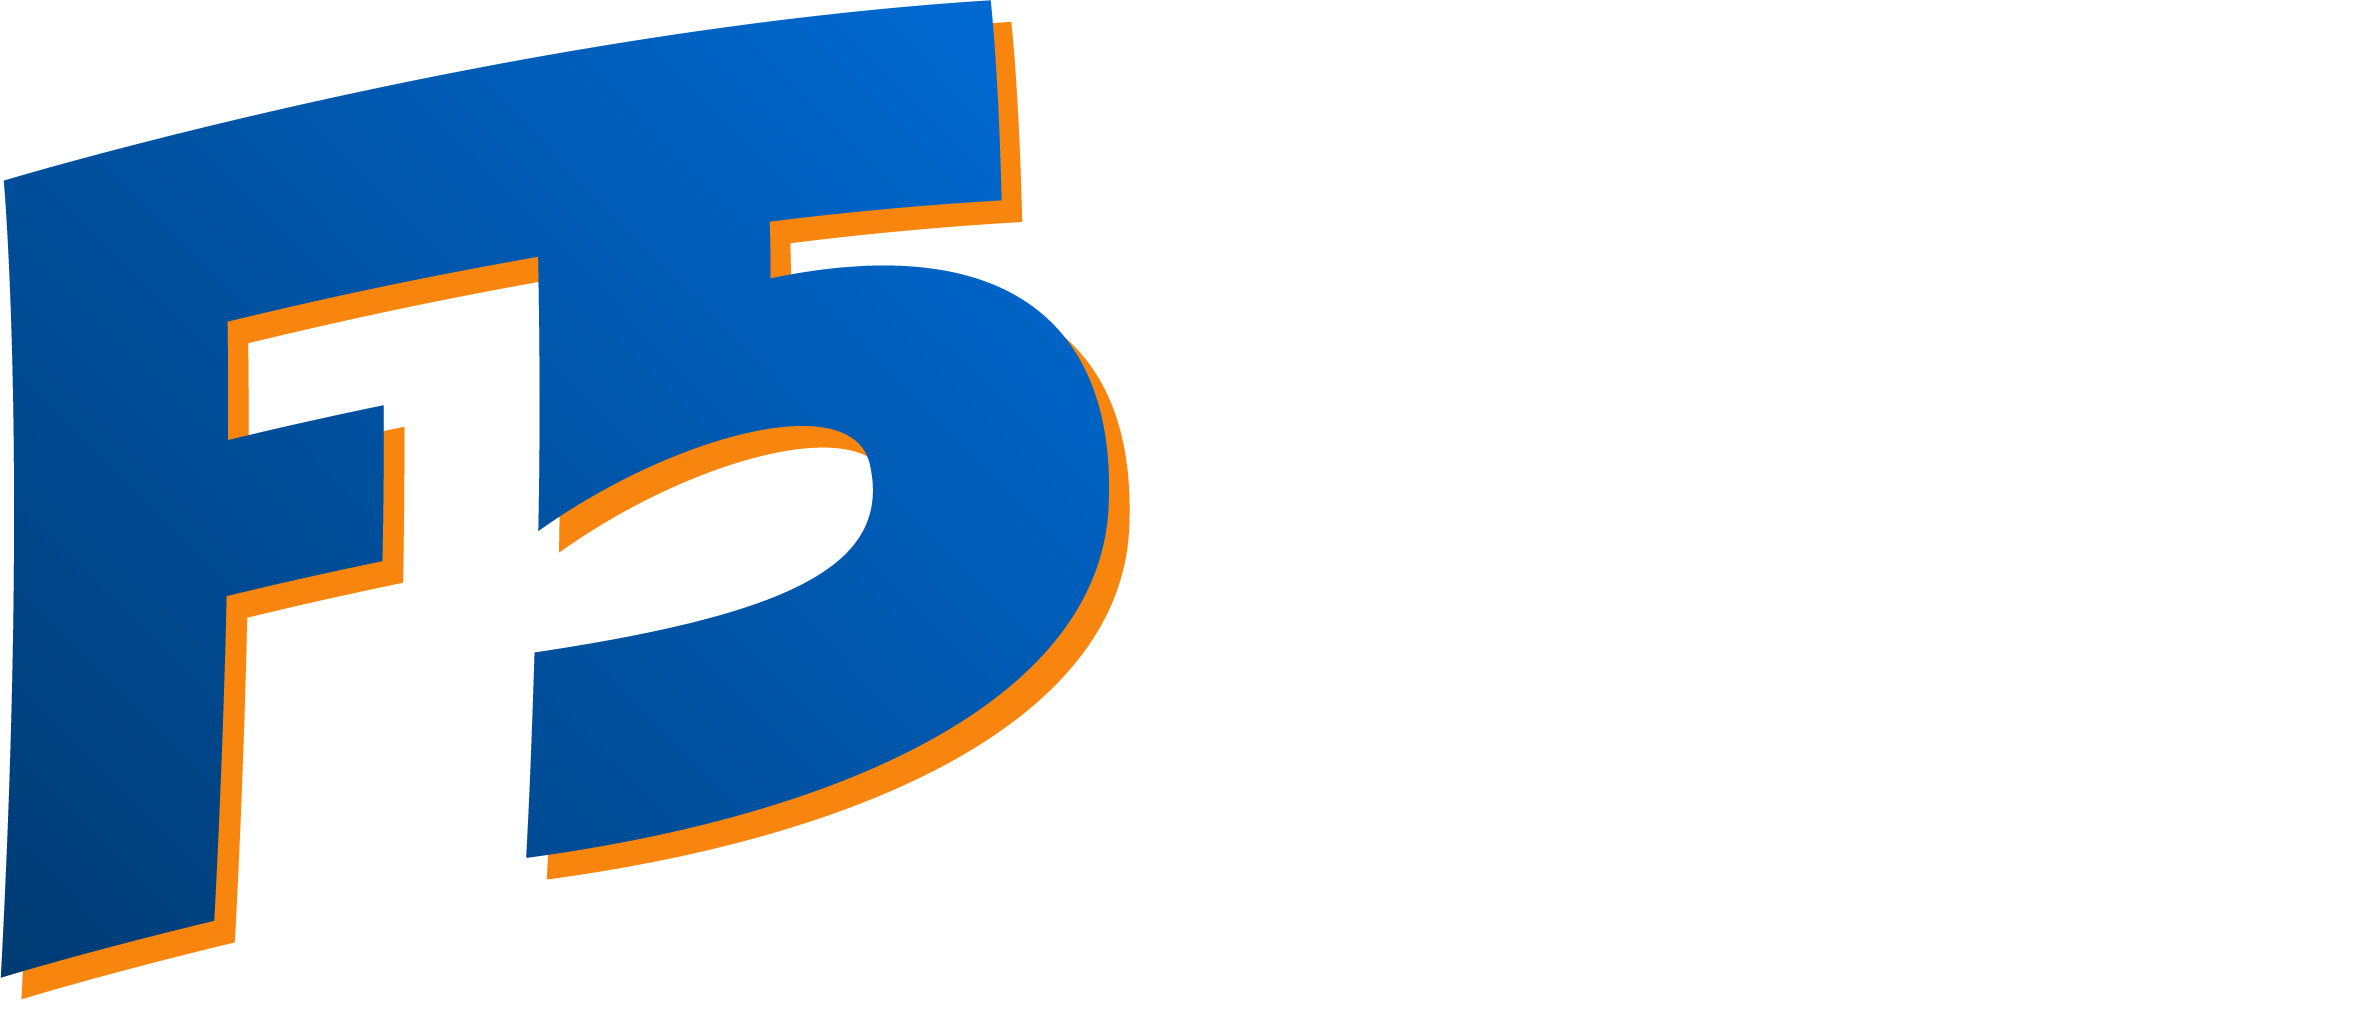 Finance Five